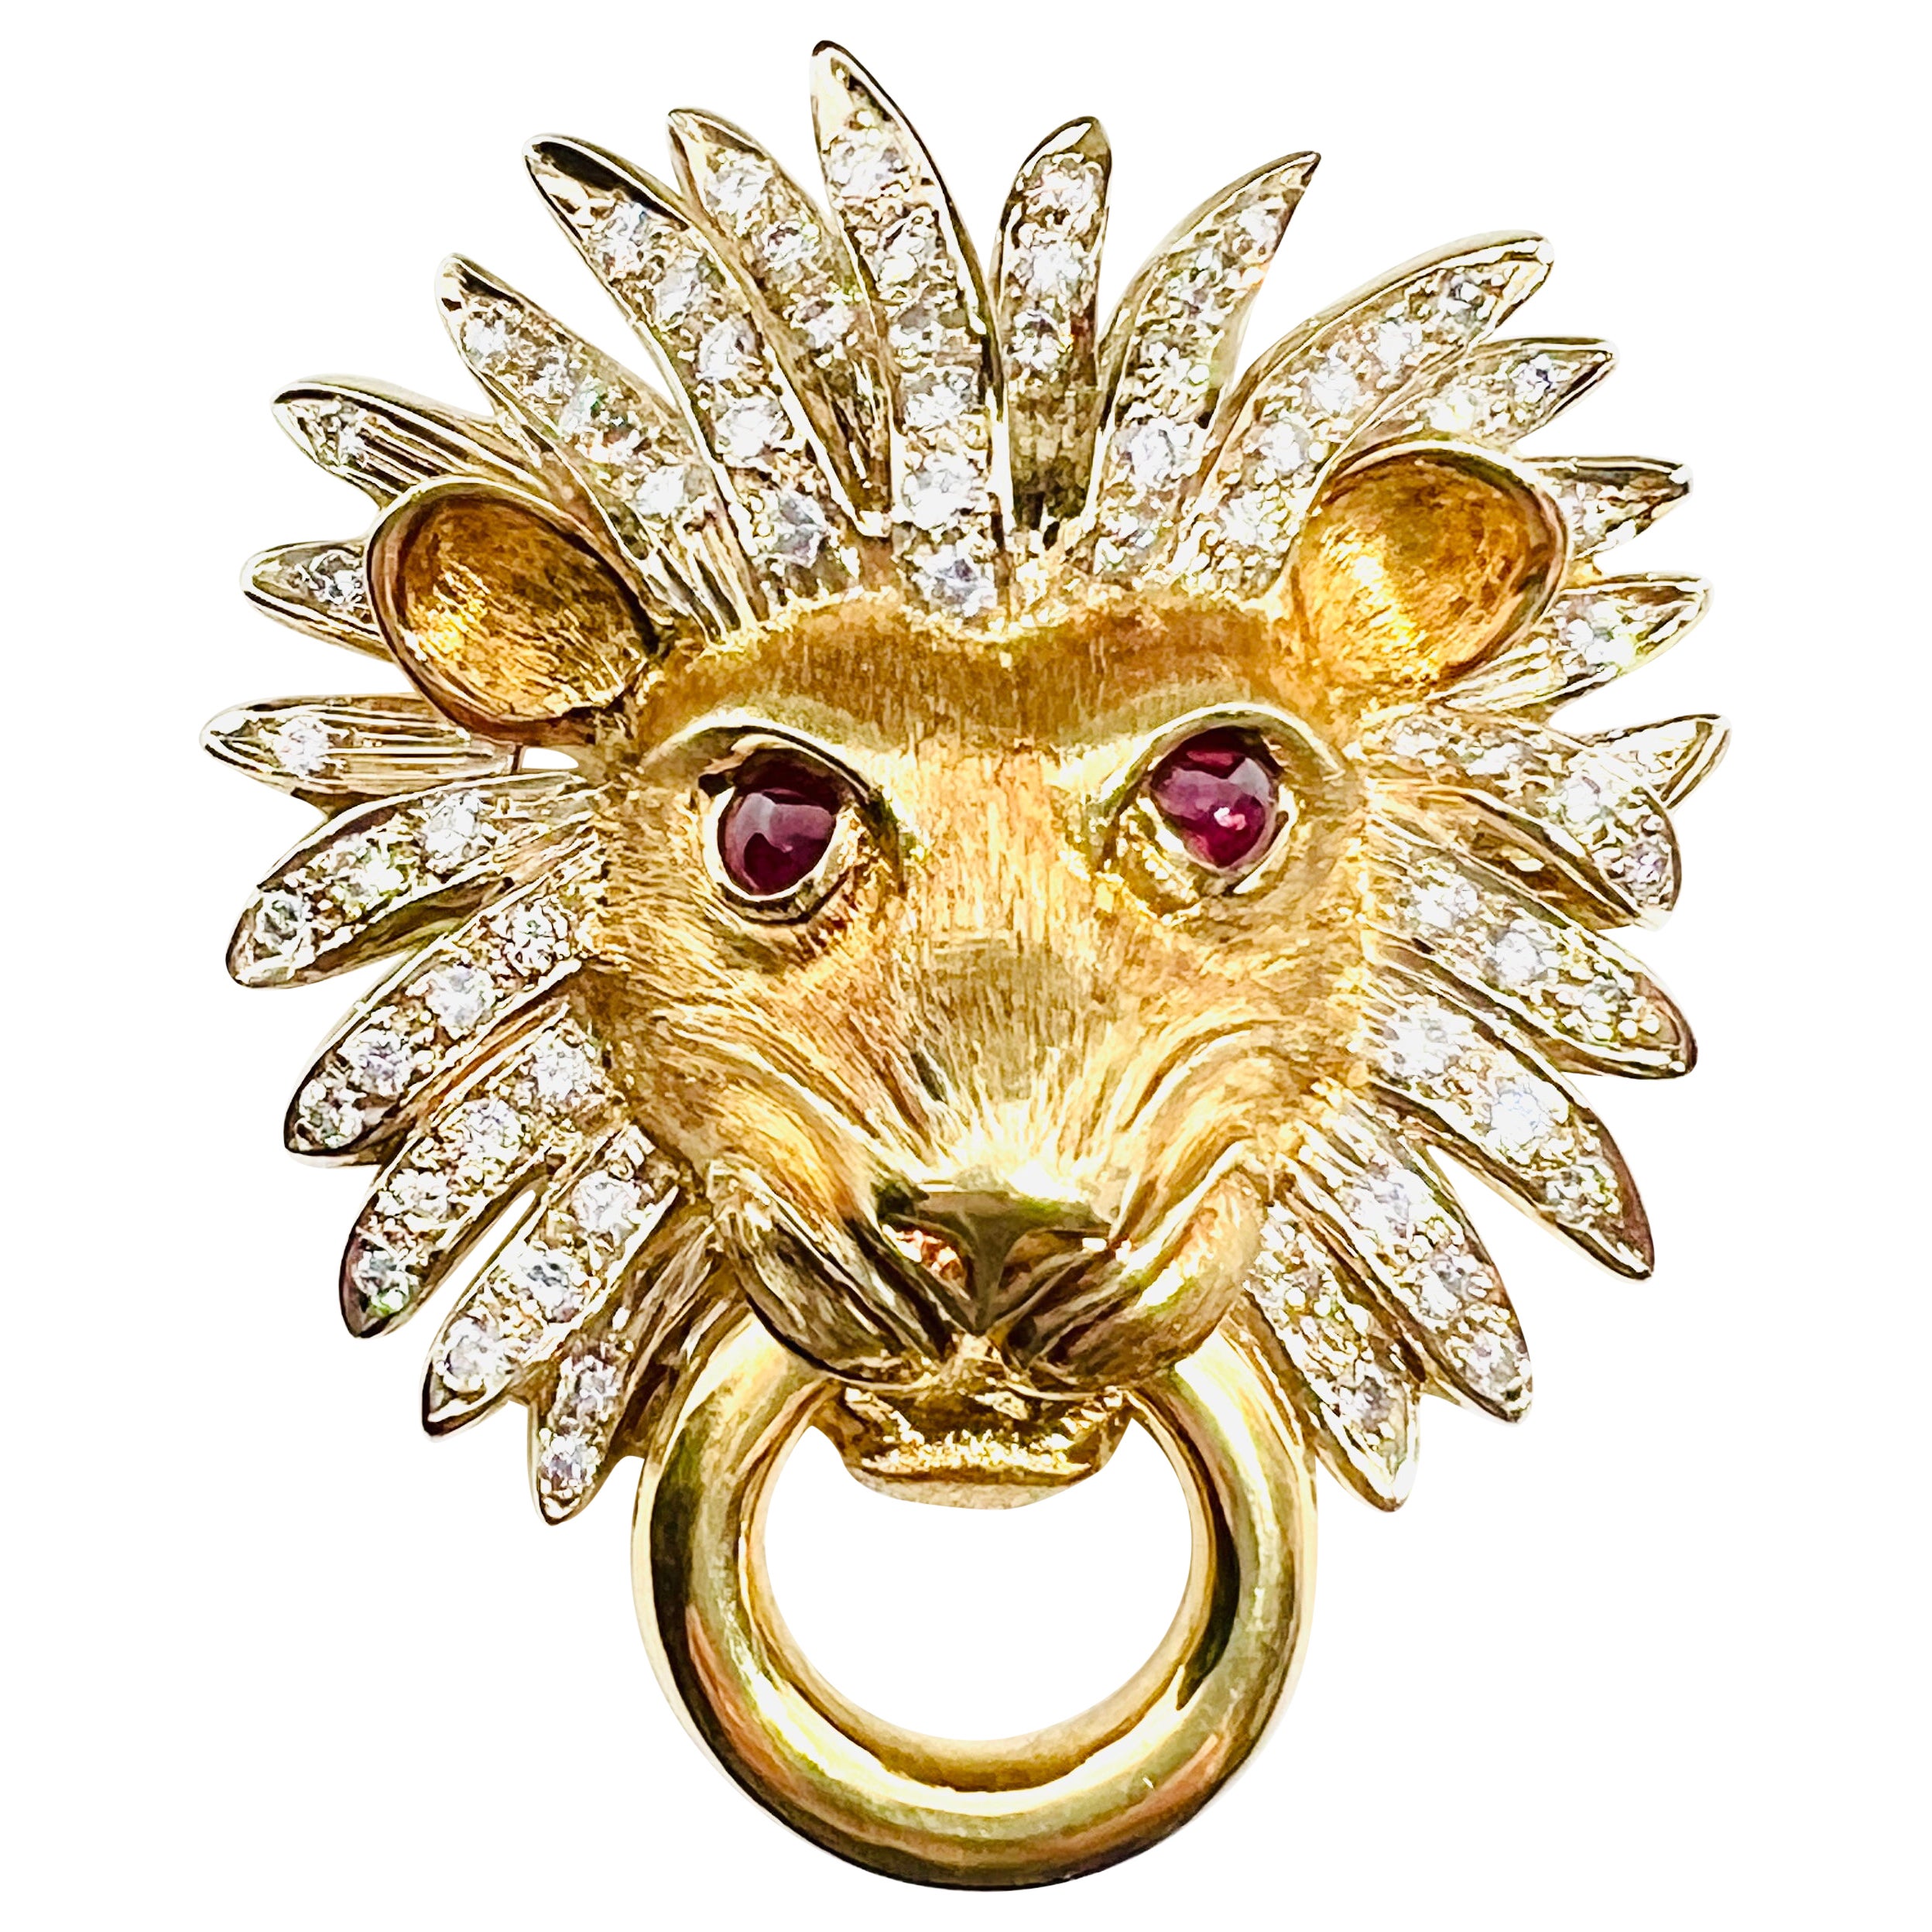 Adler 18k Yellow Gold, Diamond & Ruby Lionshead Doorknocker Enhancer Pendant